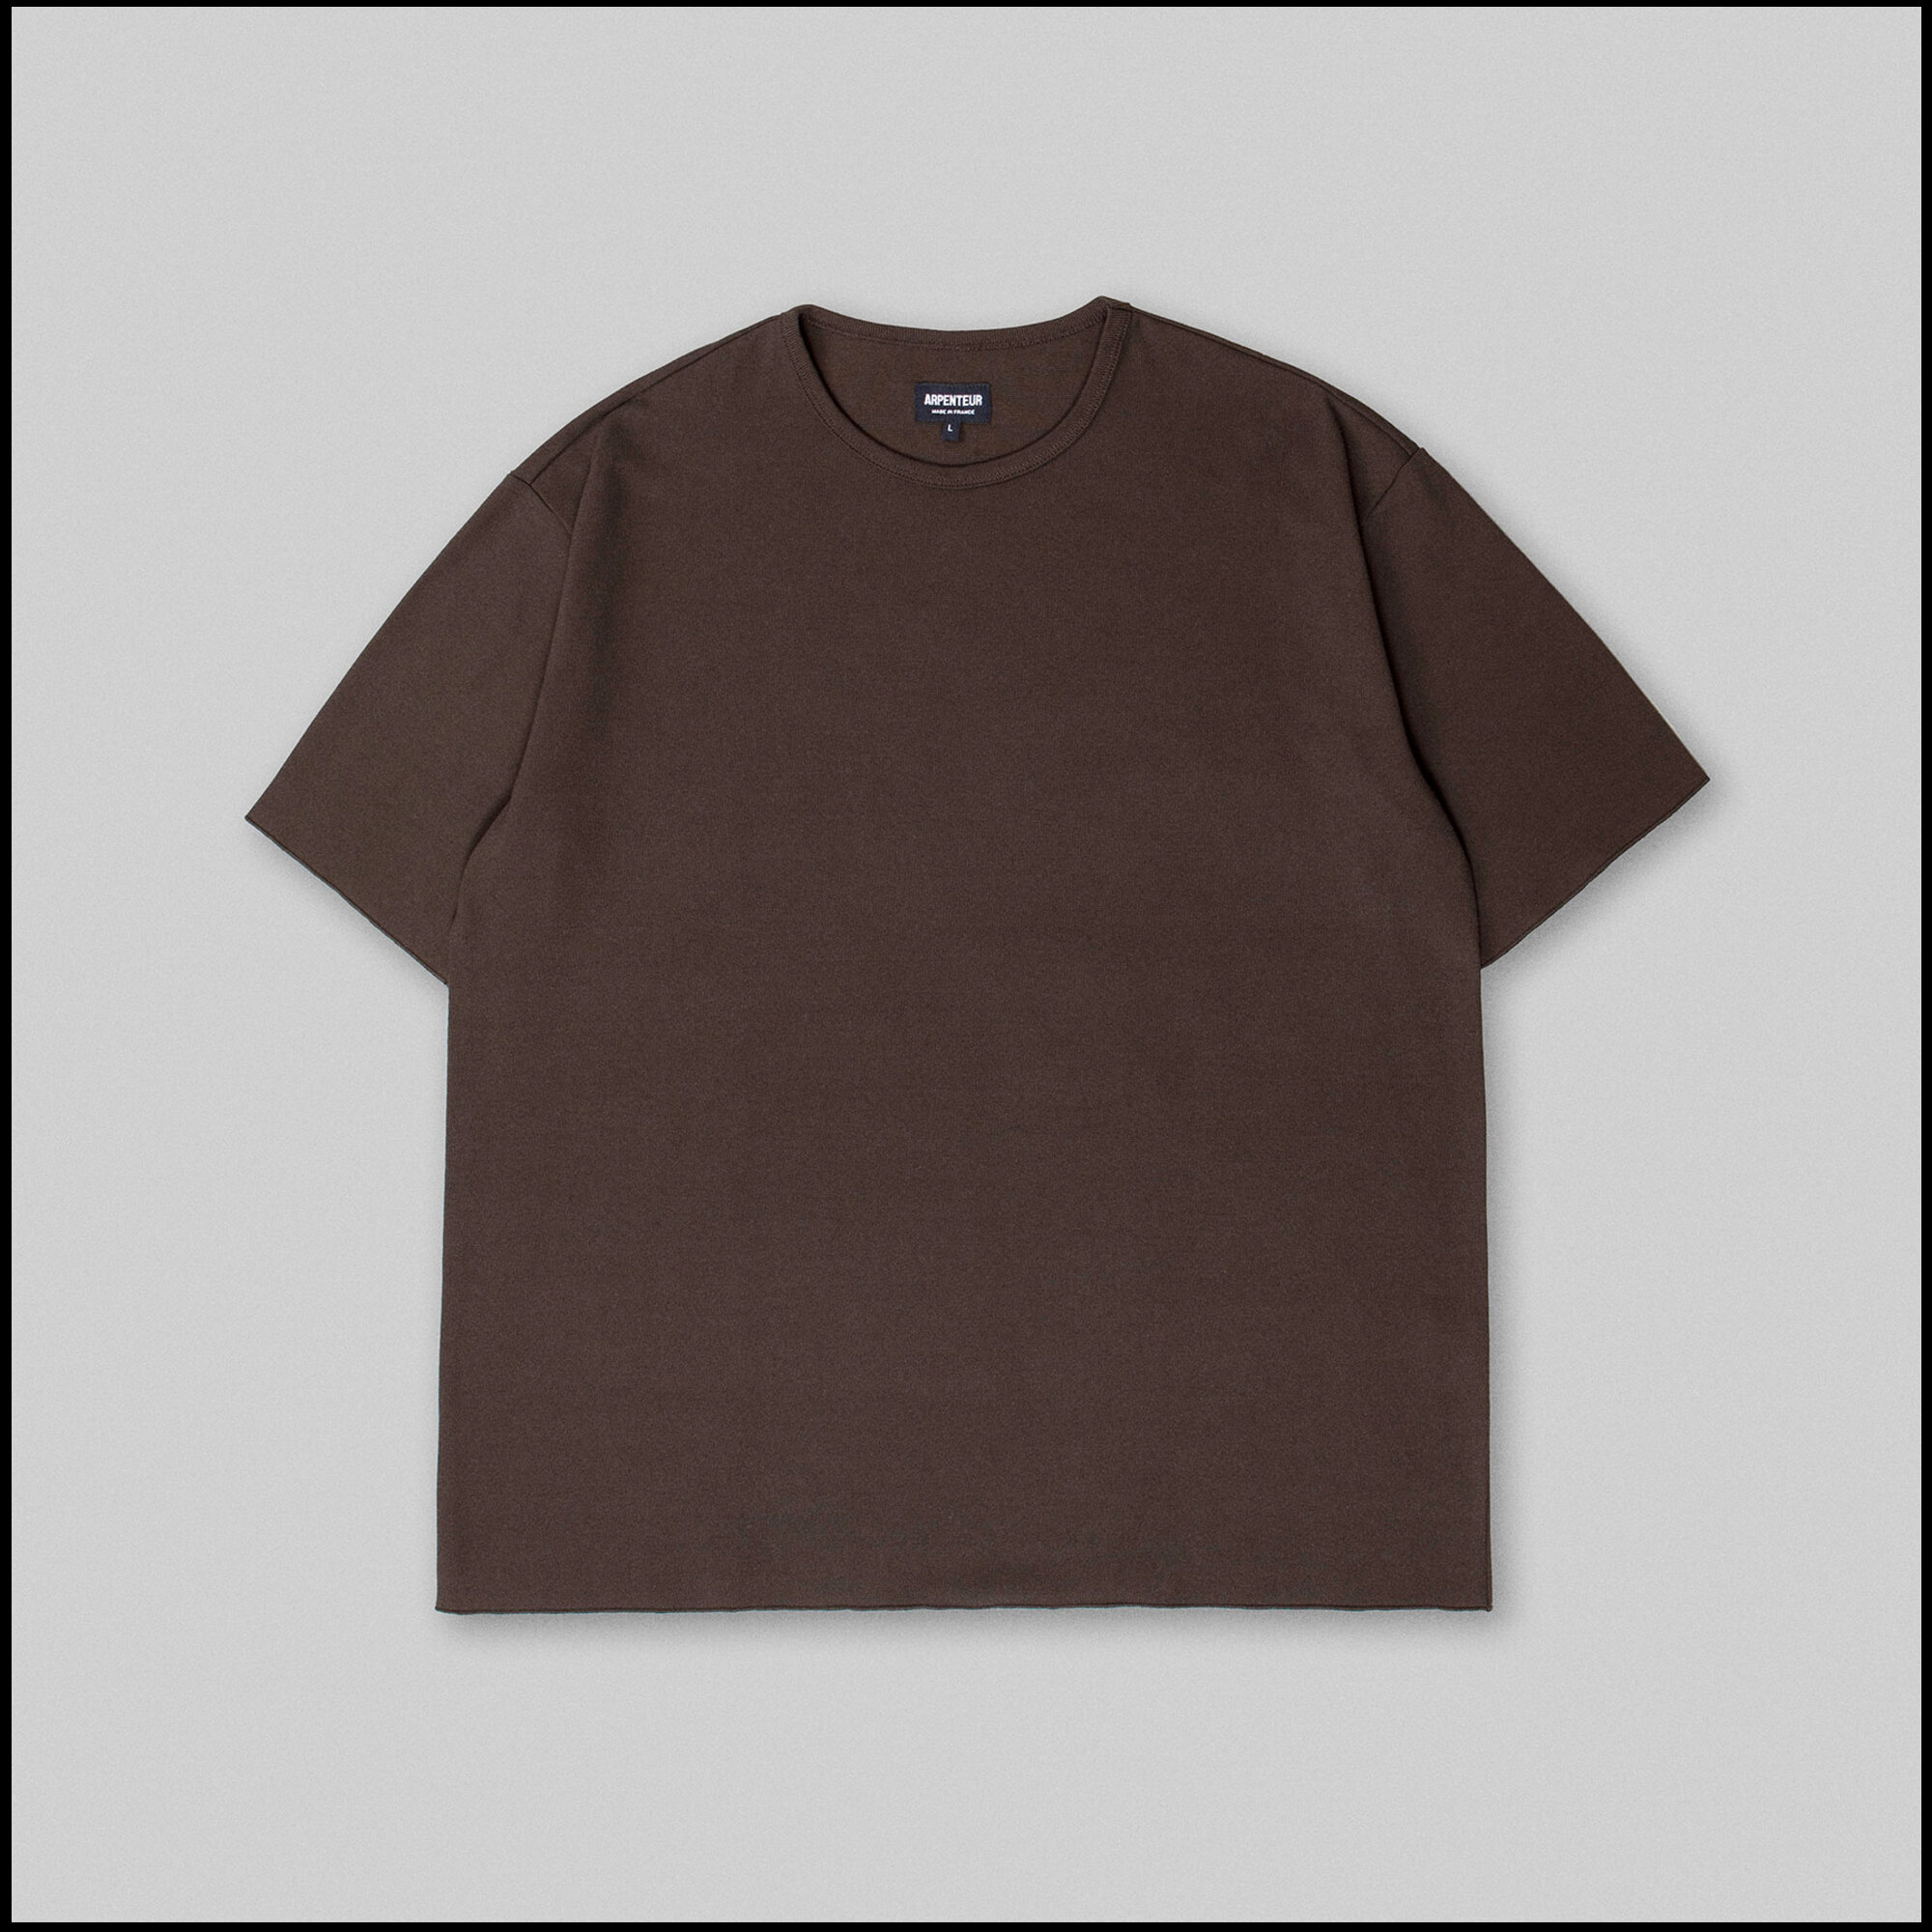 PONTUS t-shirt by Arpenteur in Soil brown color